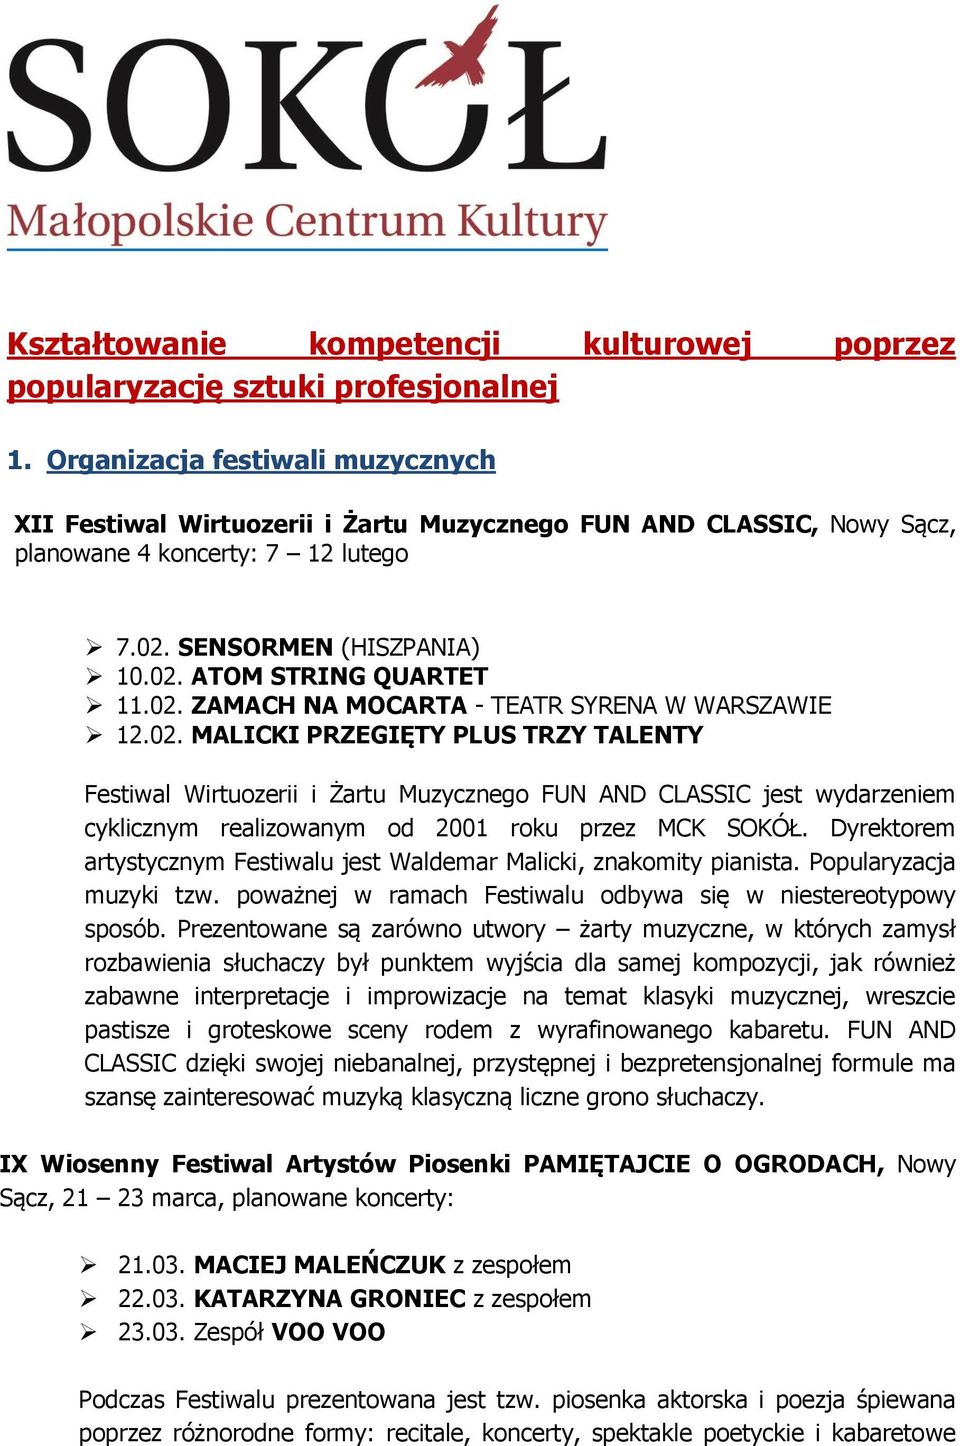 02. MALICKI PRZEGIĘTY PLUS TRZY TALENTY Festiwal Wirtuozerii i Żartu Muzycznego FUN AND CLASSIC jest wydarzeniem cyklicznym realizowanym od 2001 roku przez MCK SOKÓŁ.